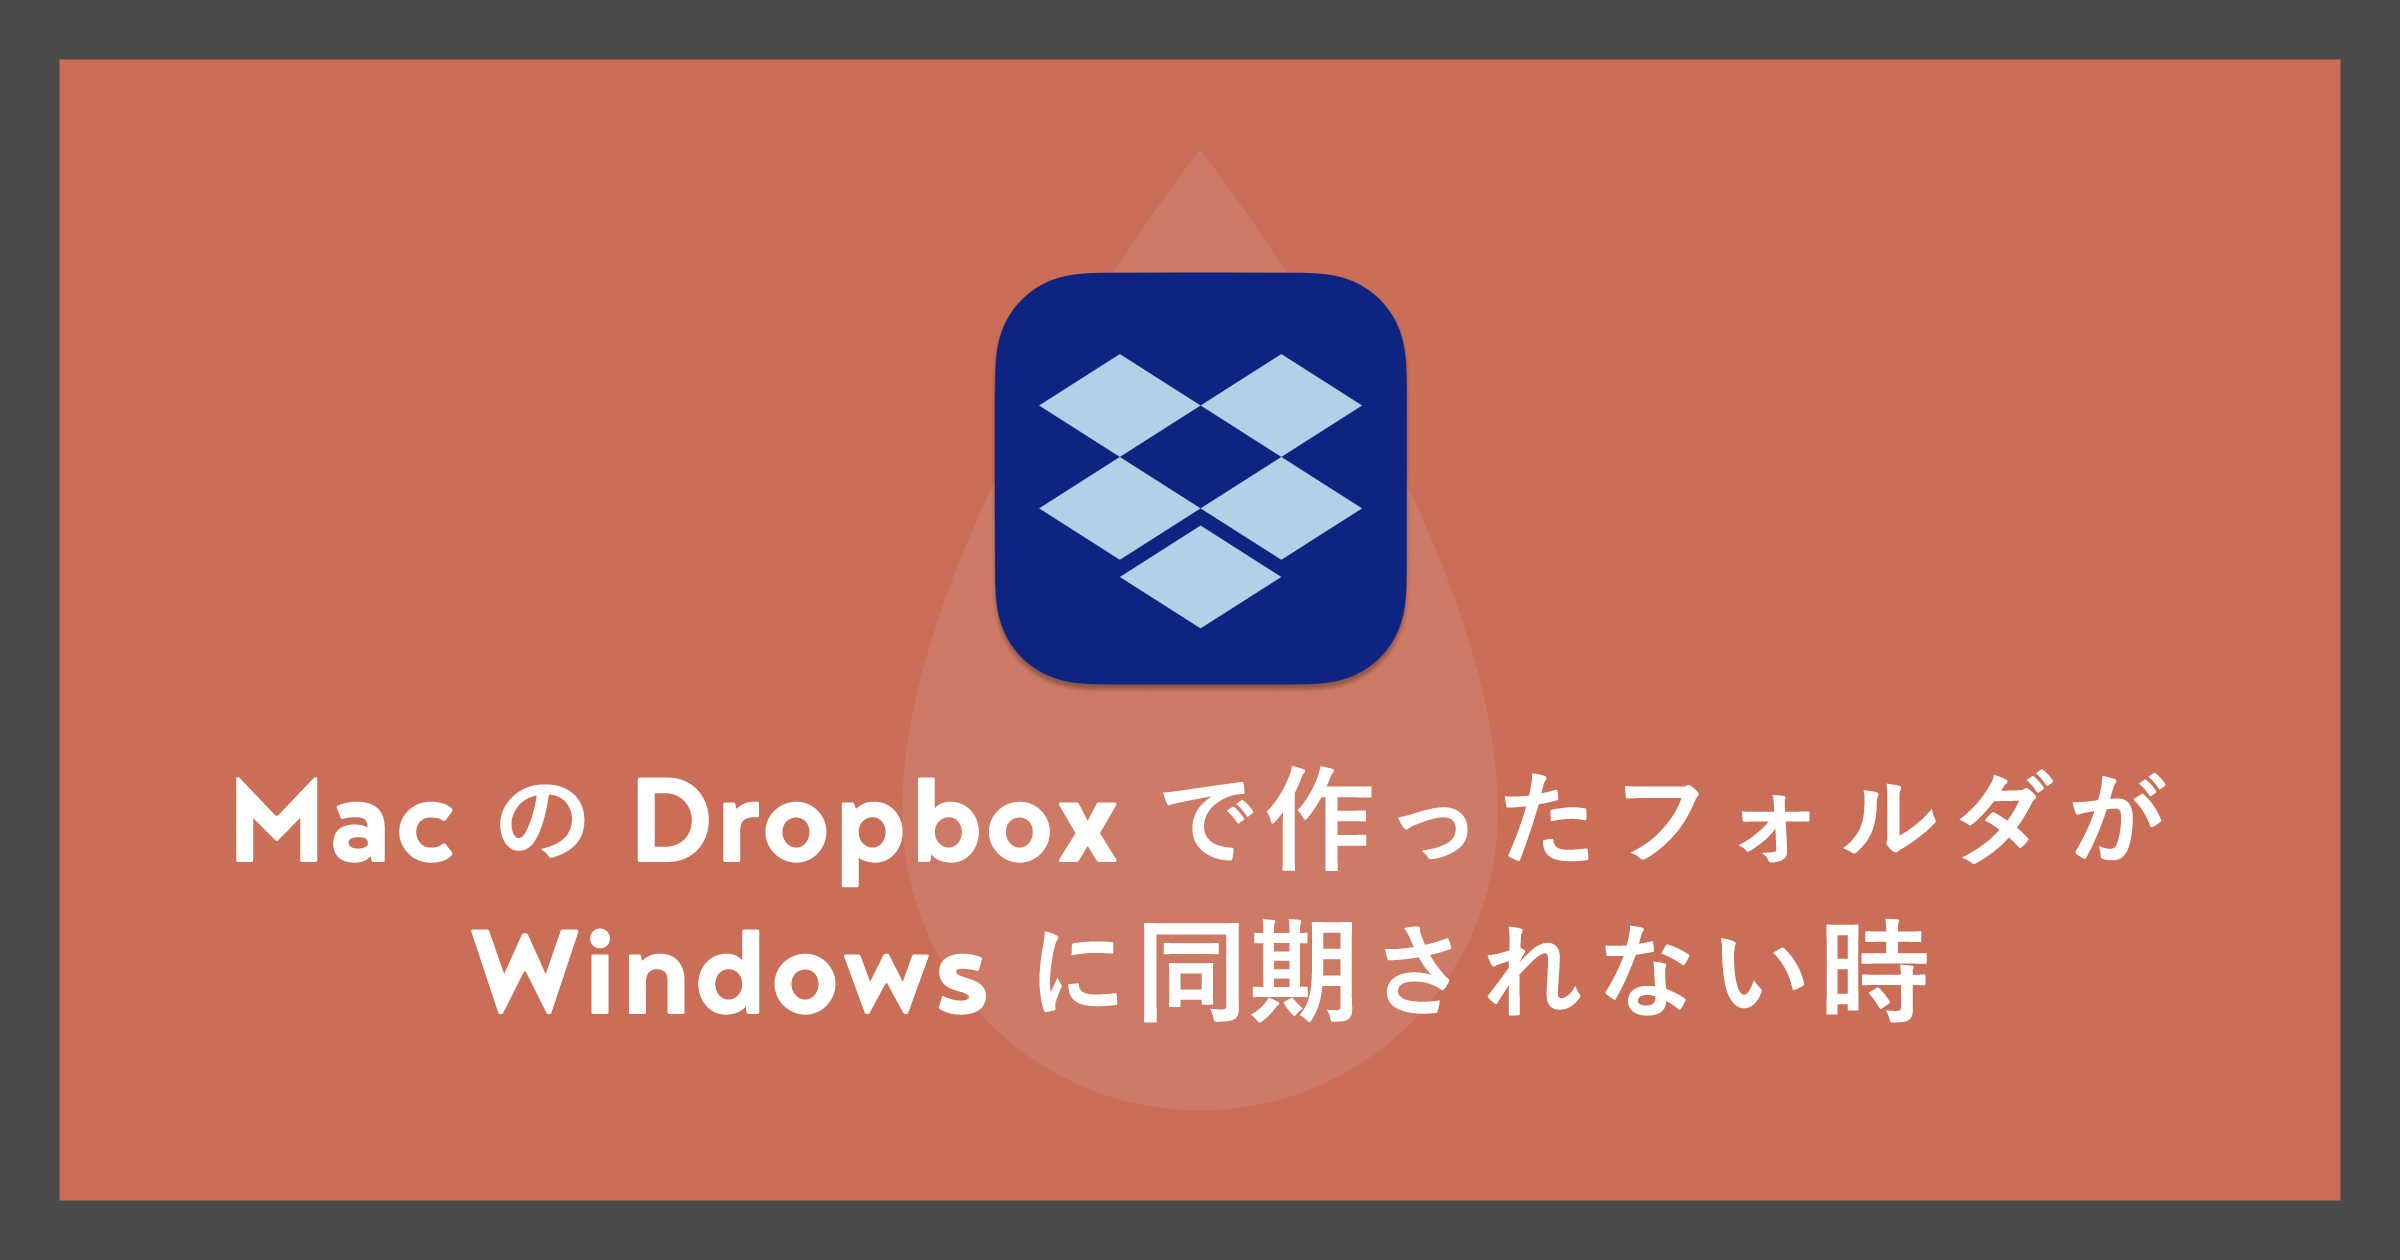 「MacのDropoxで作ったフォルダがWindowsに同期されない時」のアイキャッチ画像